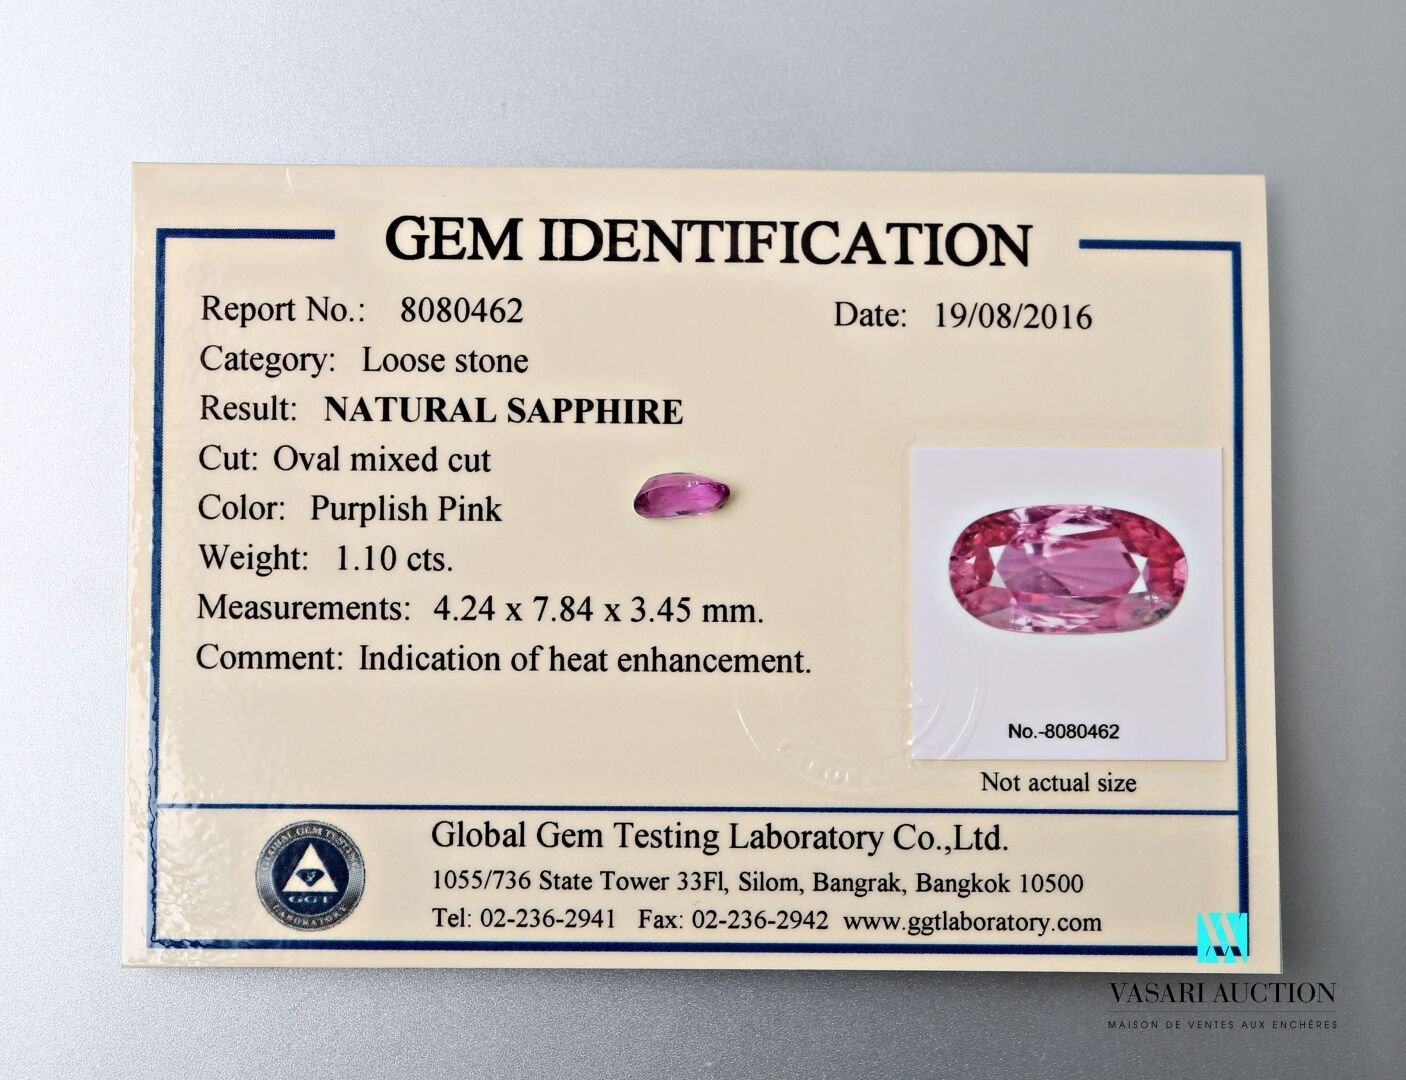 Null 椭圆形切割的粉色蓝宝石，等级为1.10克拉，附有全球宝石检测实验室的8080462号证书，表明经过热处理。